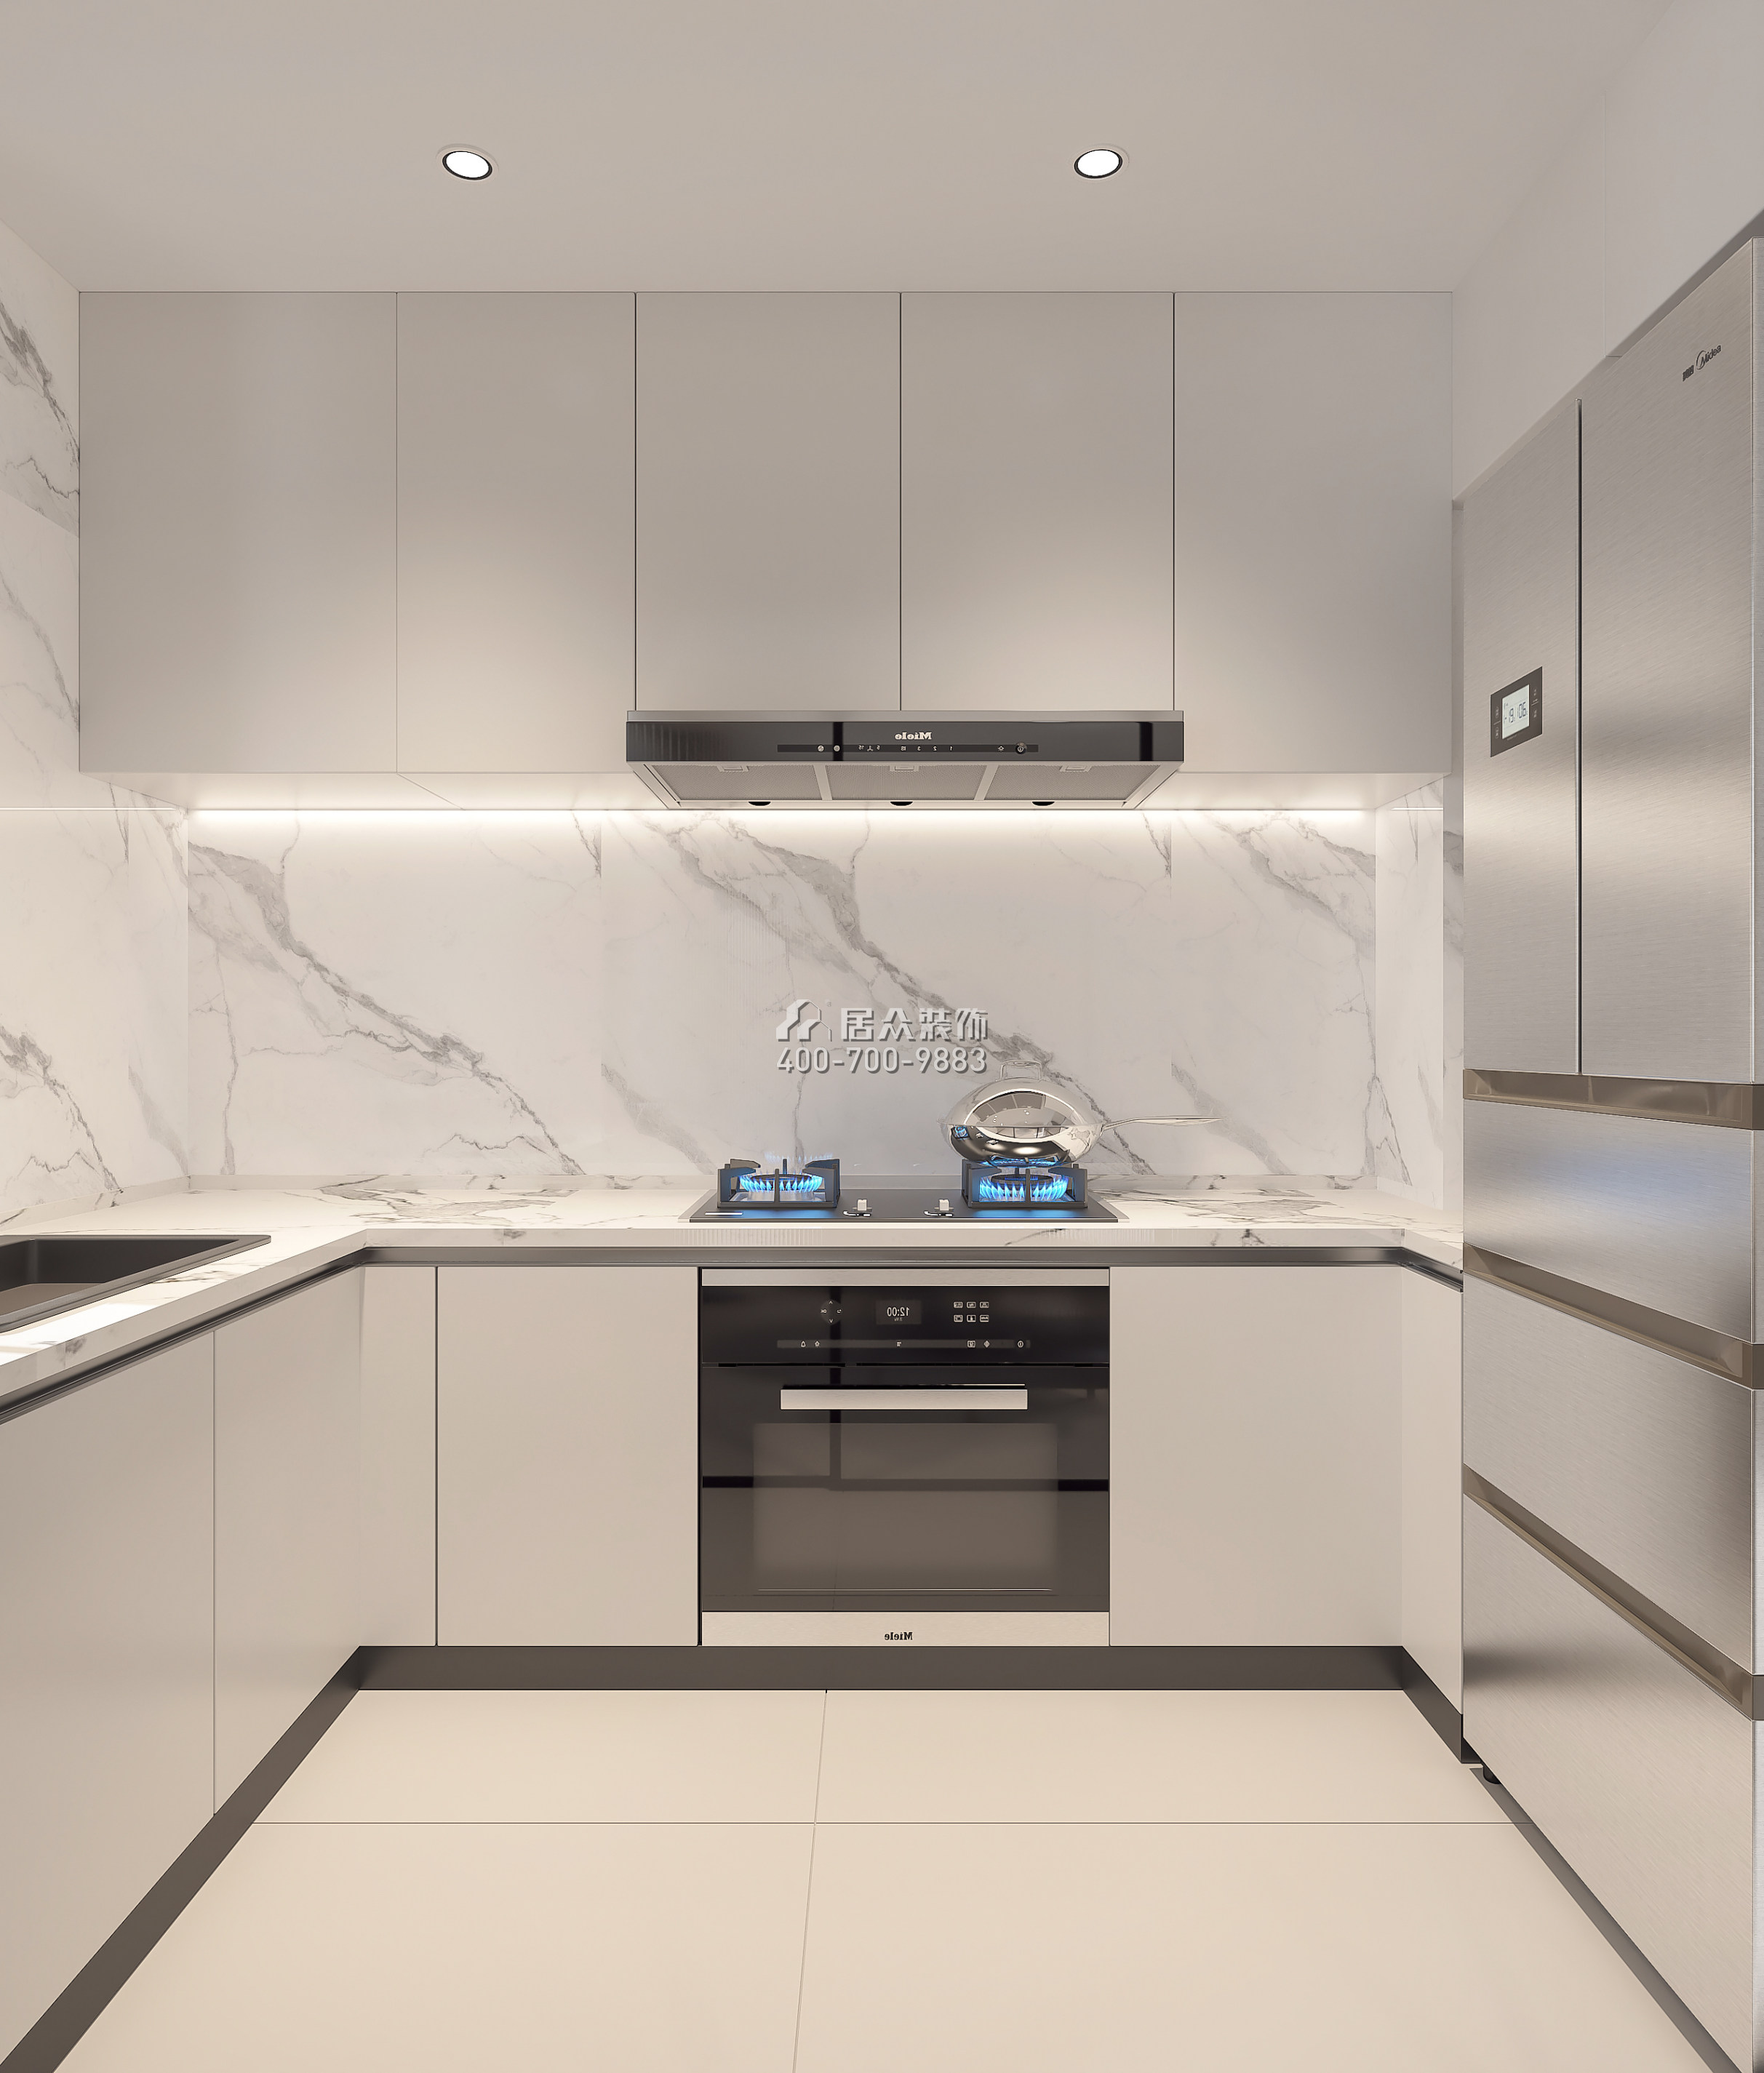 深铁阅山镜88平方米现代简约风格平层户型厨房装修效果图